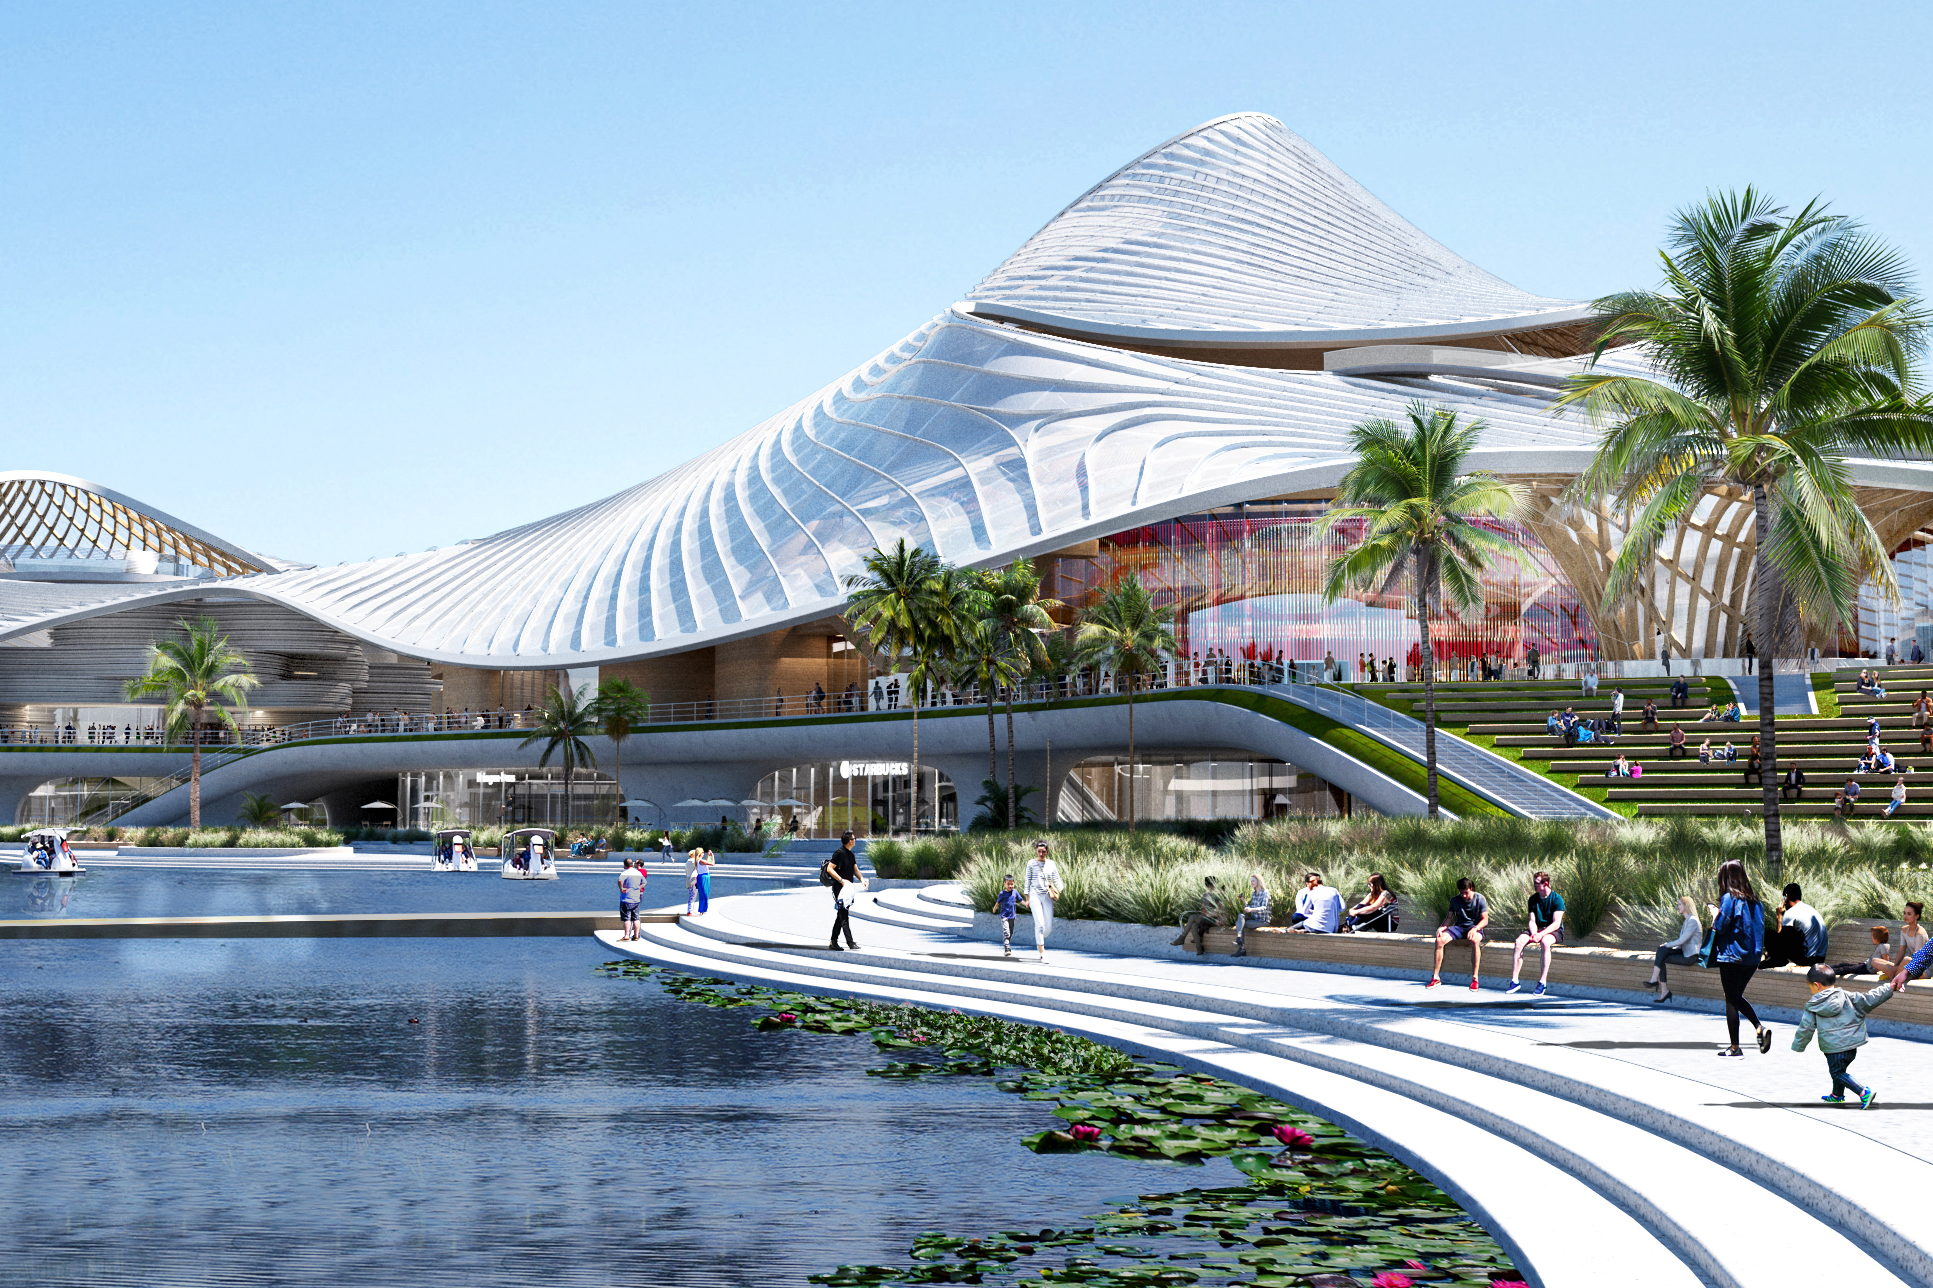 从露天绿化露台到室内垂直绿化设计，南海艺术中心以多层次绿色景观拥抱自然。